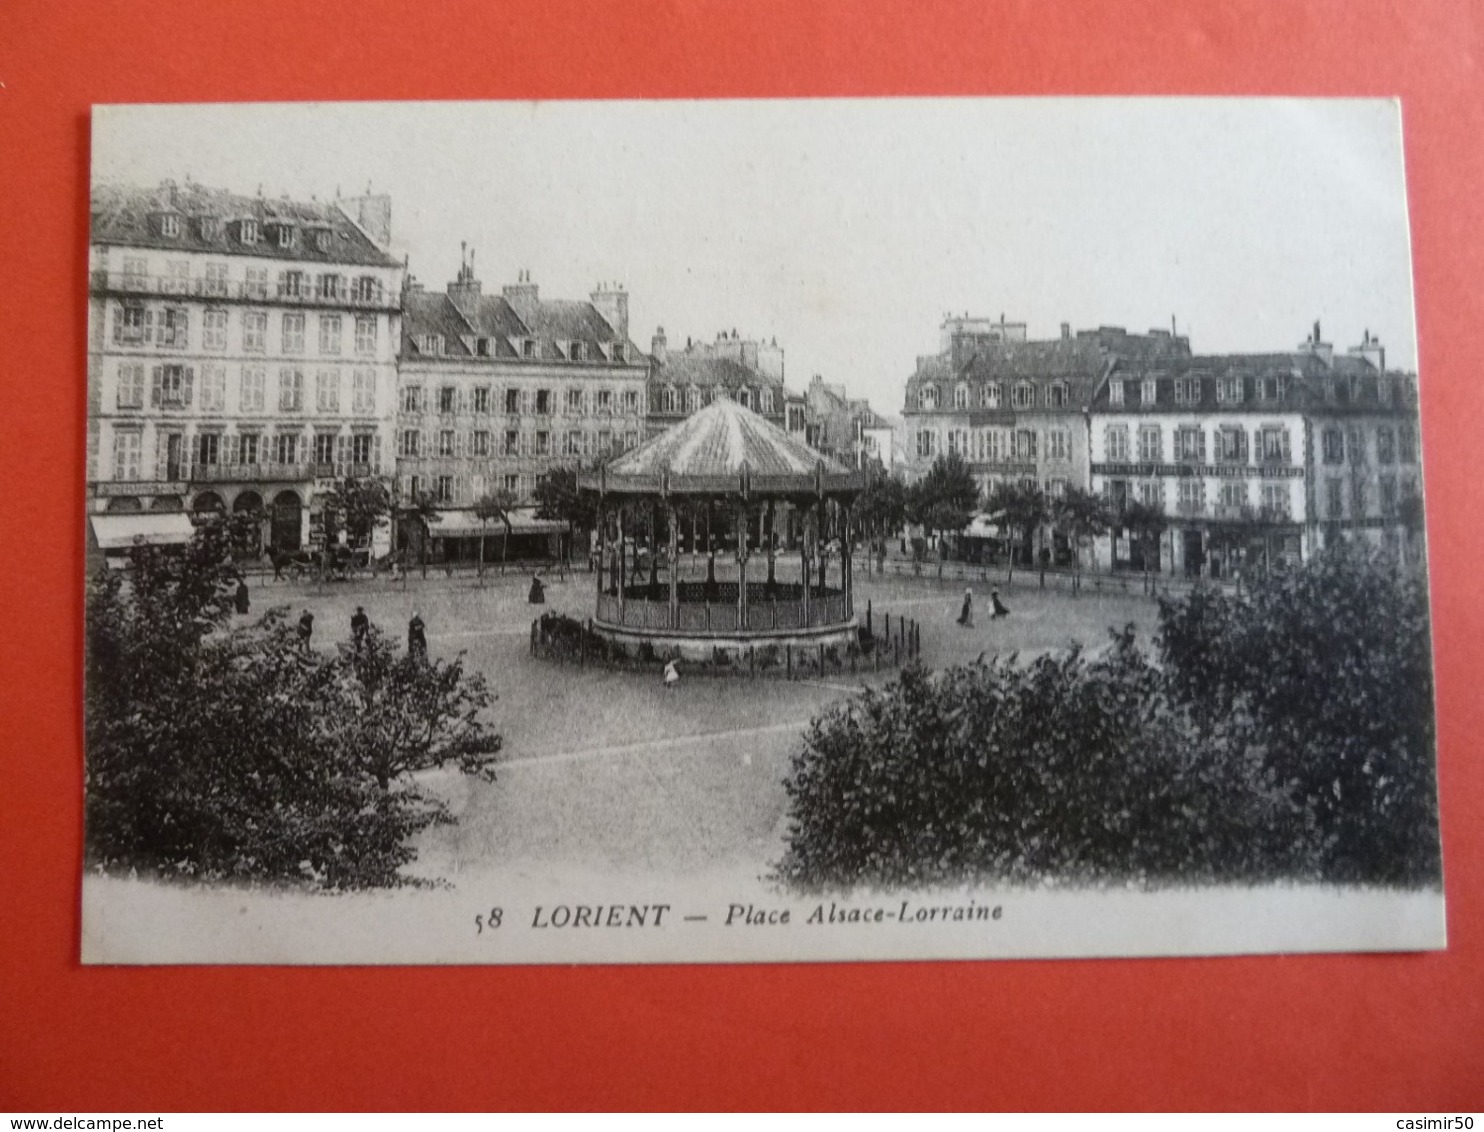 LORIENT PLACE ALSACE LORRAINE - Lorient